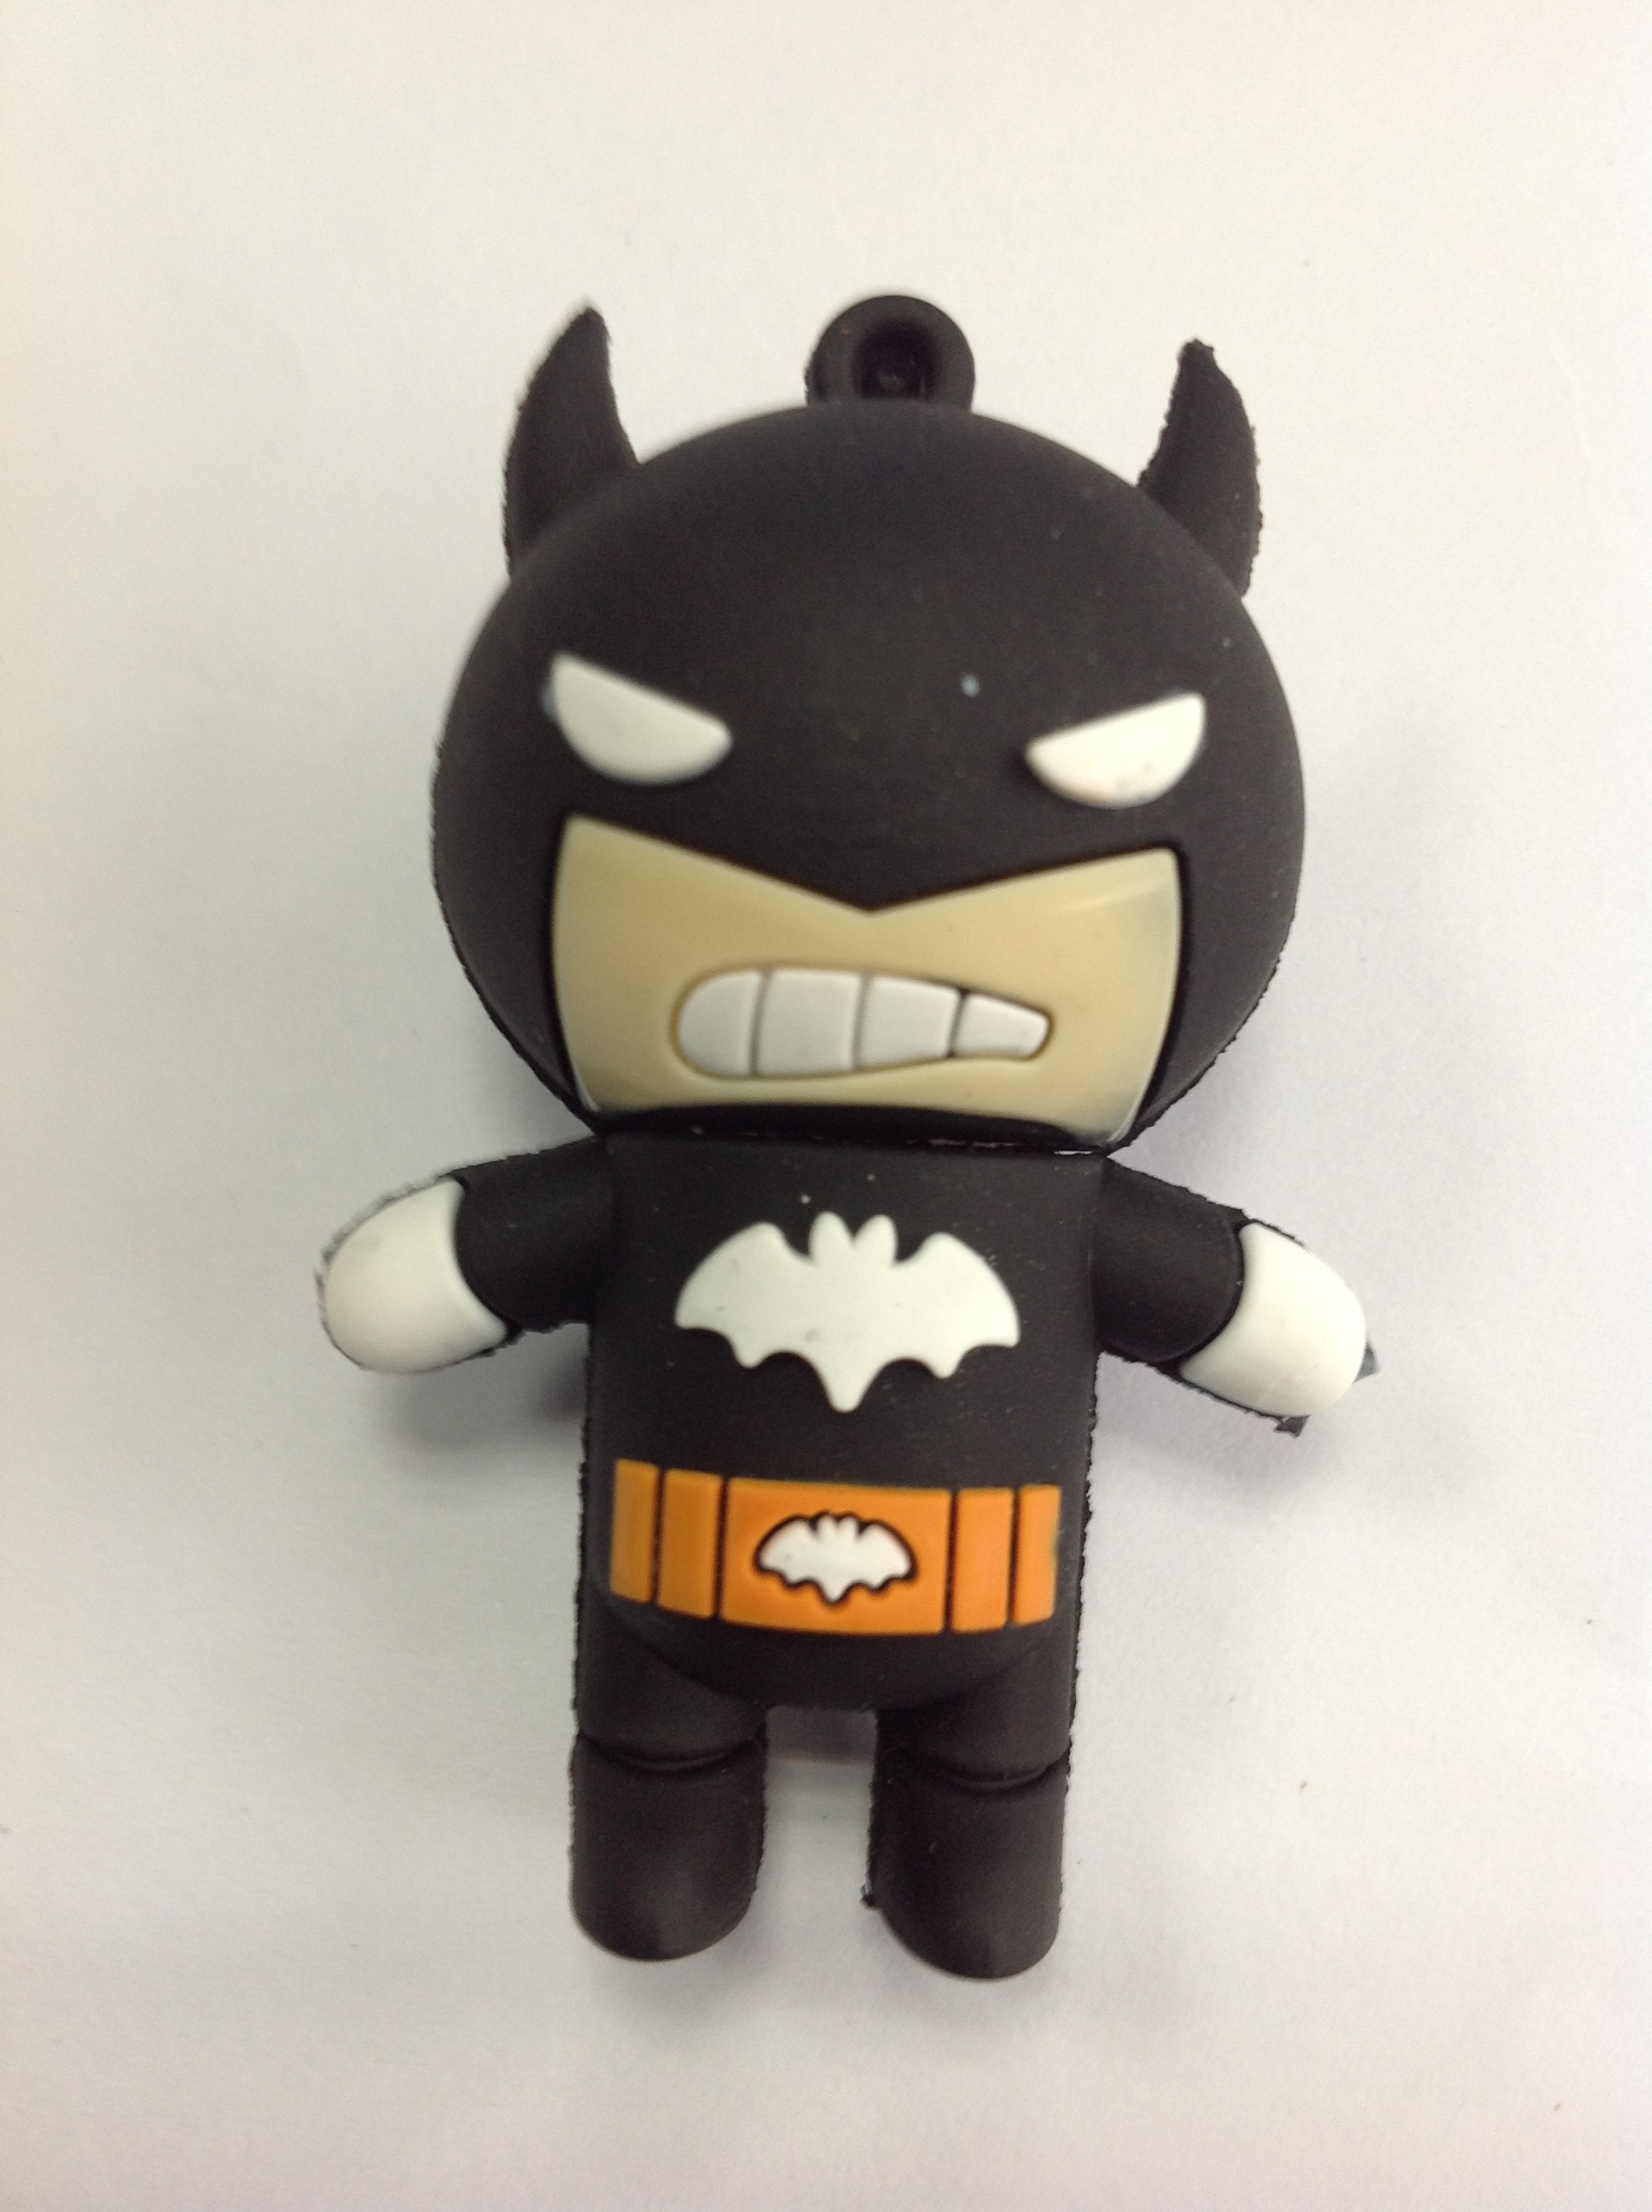 8GB Cartoon Batman USB Flash Drive